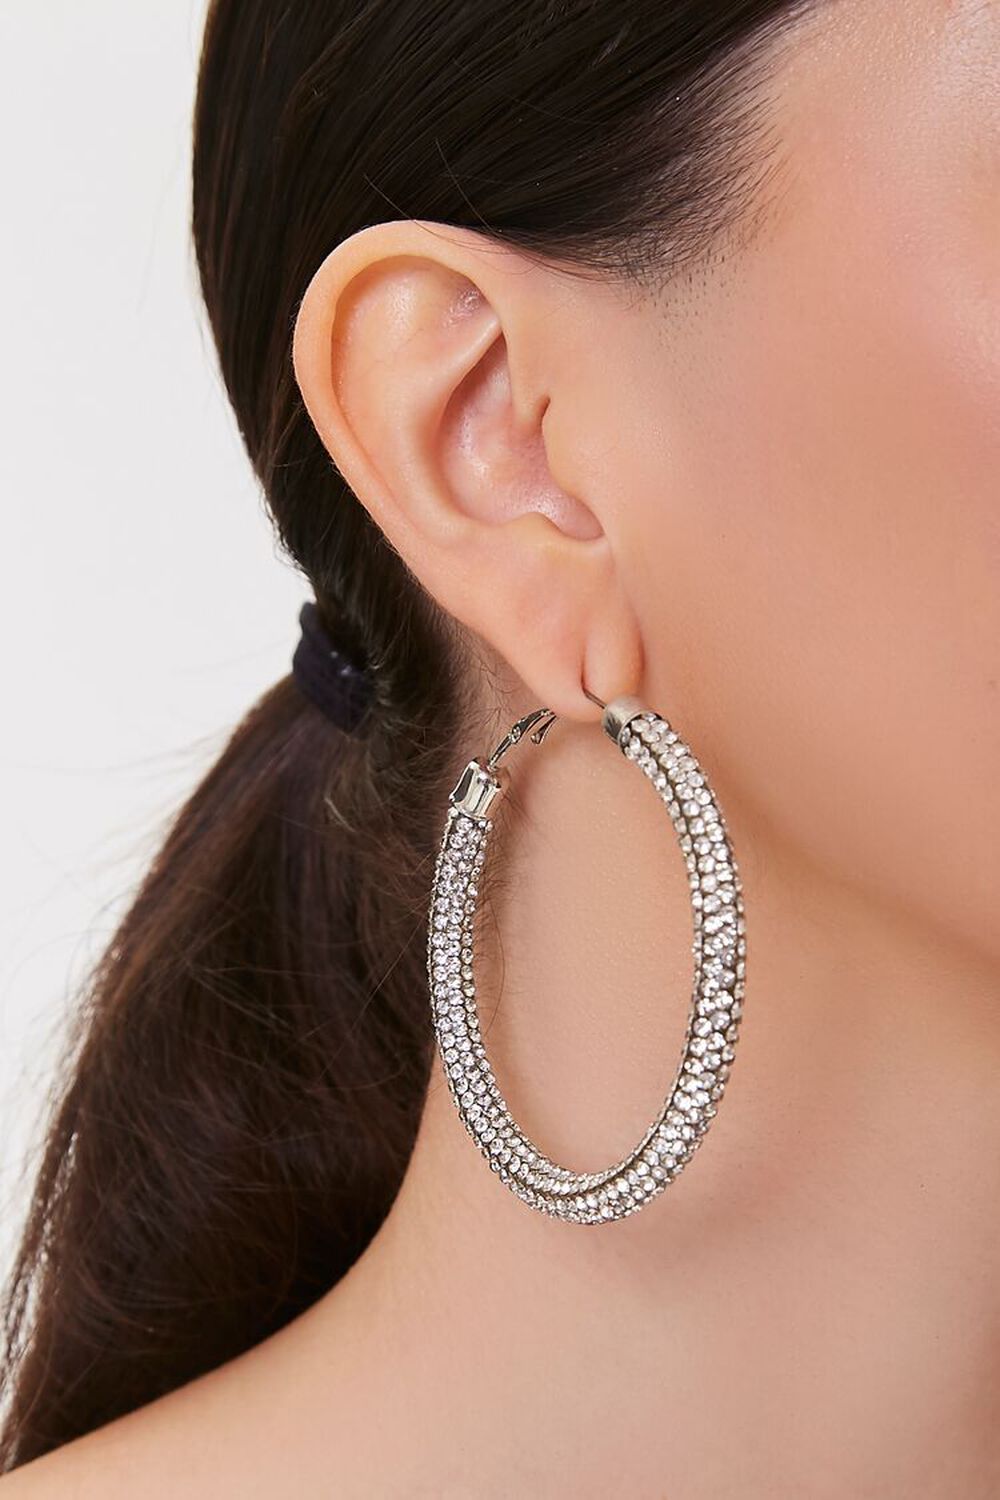 SILVER/CLEAR Rhinestone Hoop Earrings, image 1